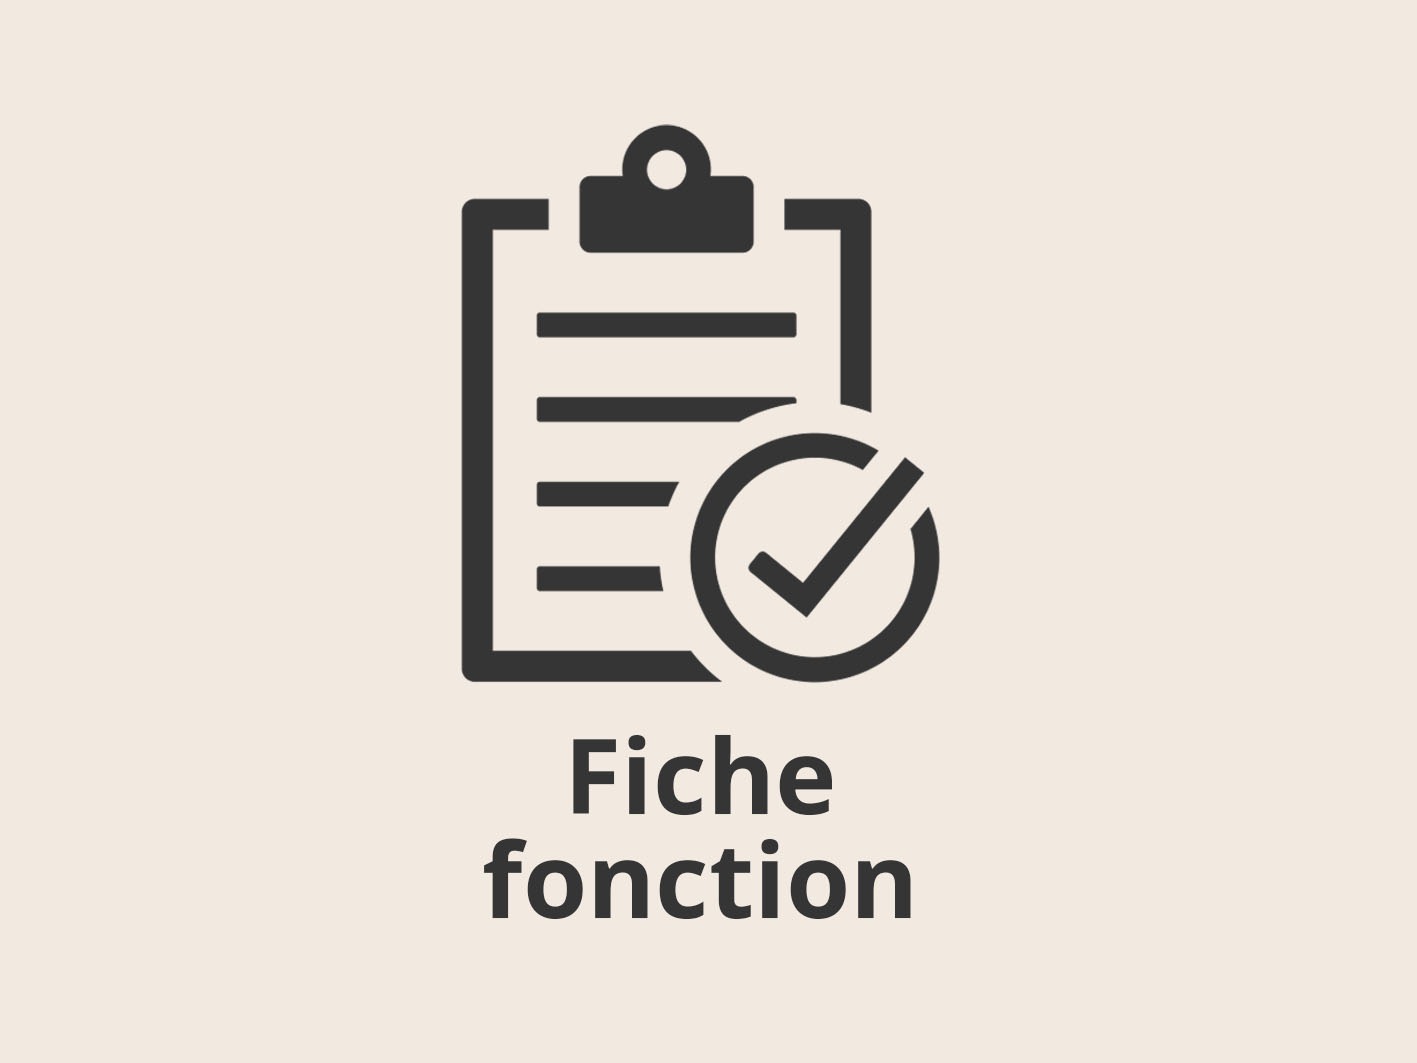 Pictogramme Fiche fonction et texte "Fiche fonction"